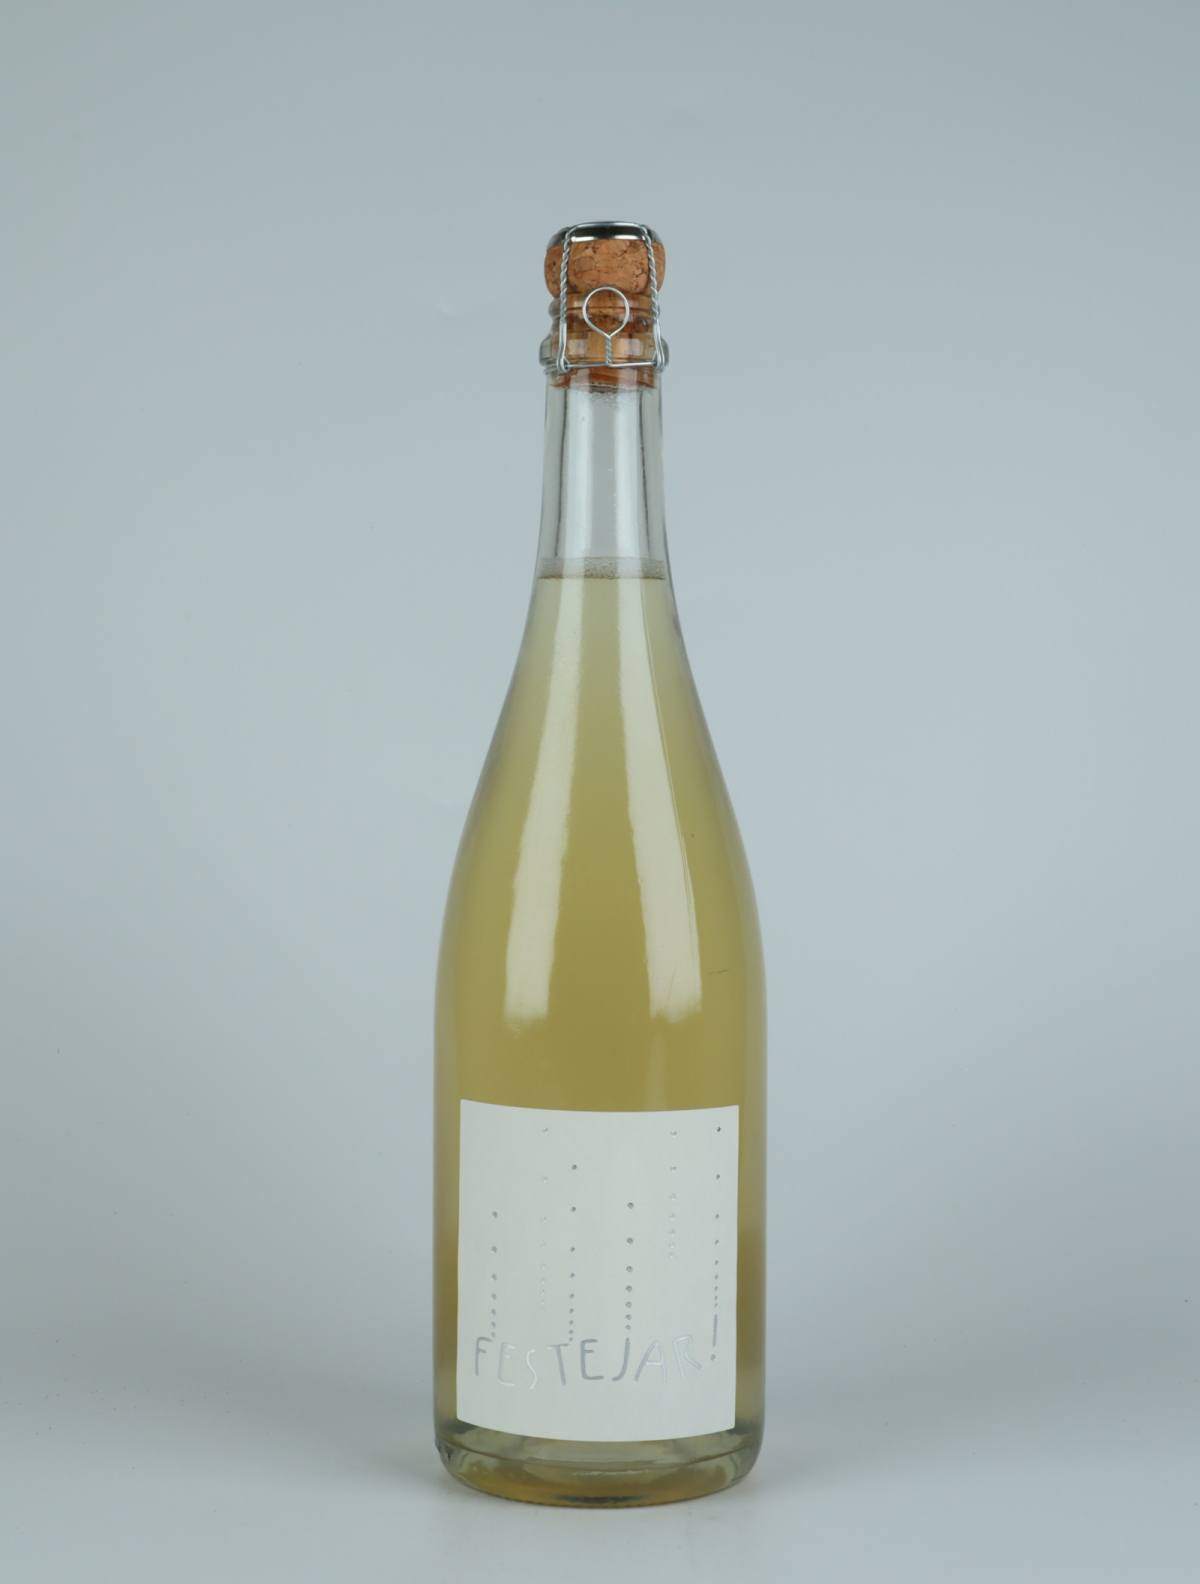 A bottle 2021 Festejar Blanc Sparkling from Patrick Bouju, Auvergne in France